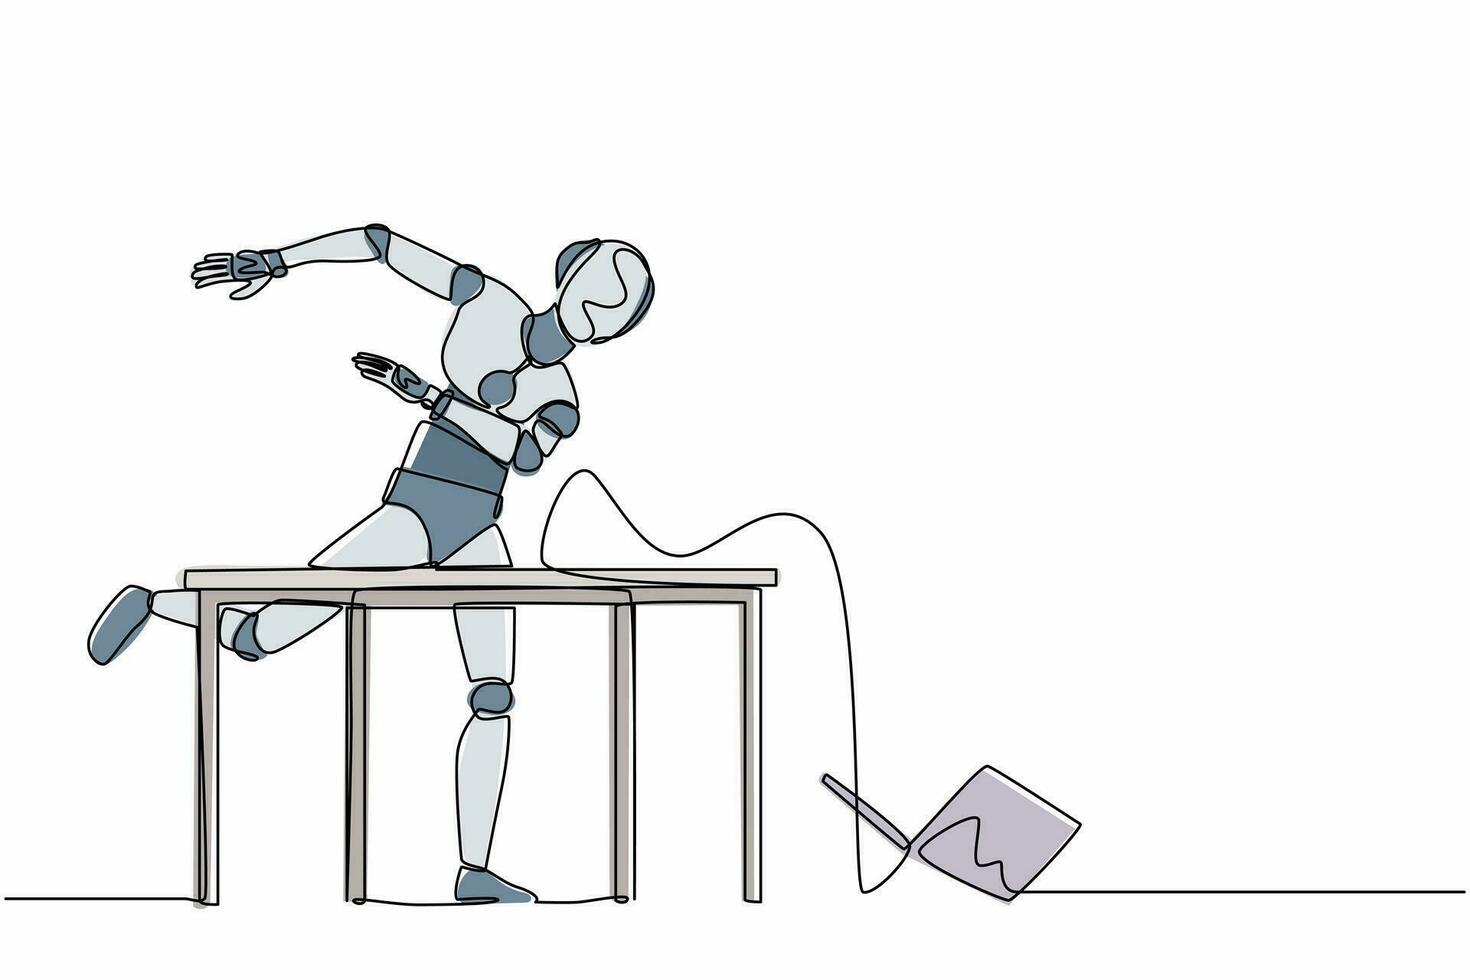 el robot frustrado de dibujo continuo de una línea está enojado y arrojando la computadora portátil. organismo cibernético robot humanoide. futuro concepto de desarrollo de robótica. ilustración gráfica de vector de diseño de dibujo de una sola línea